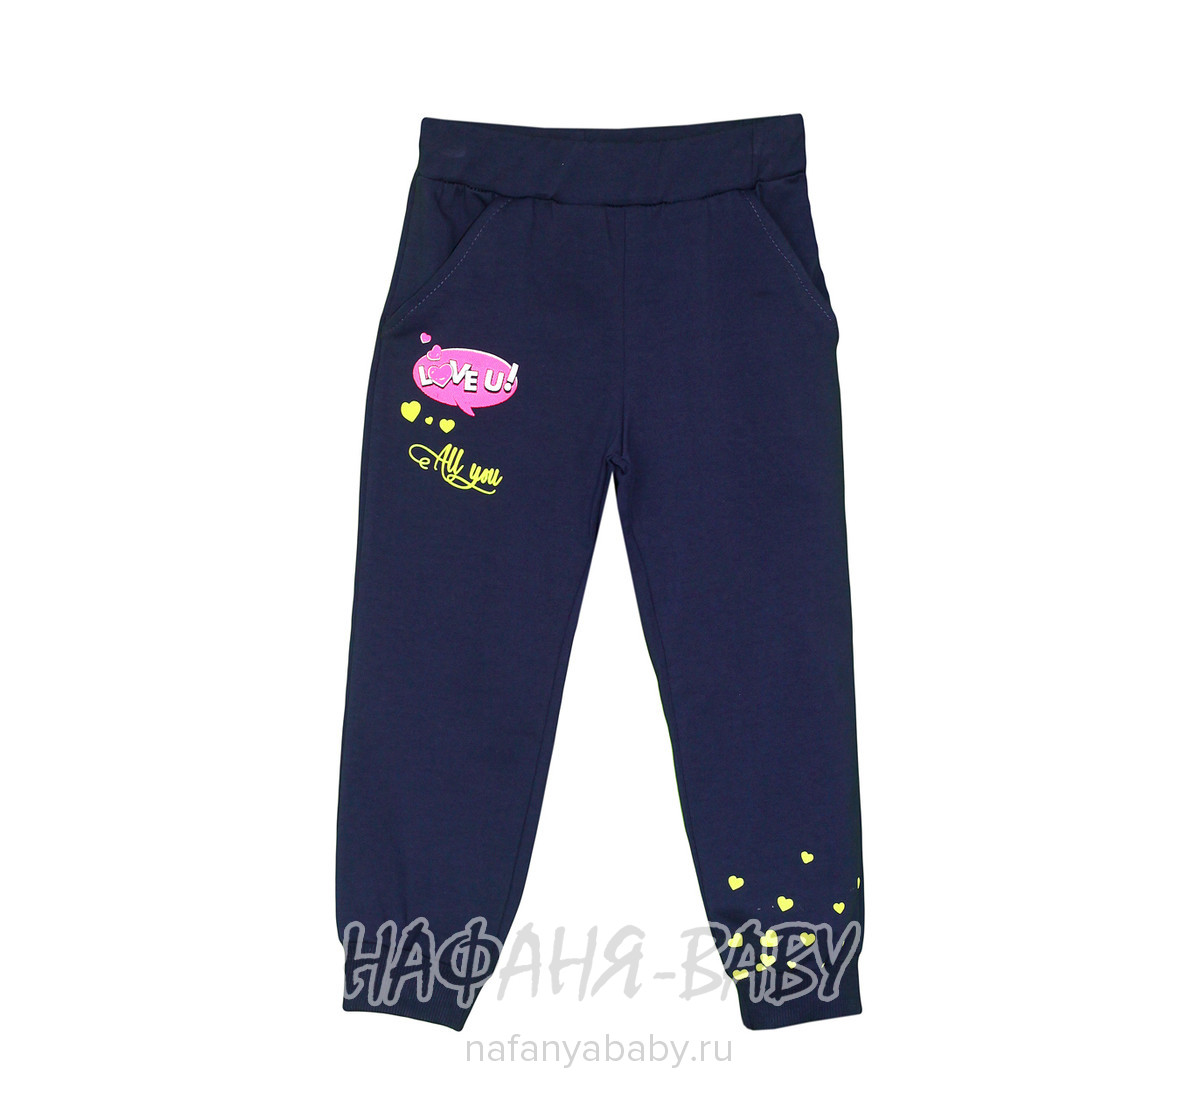 Детские трикотажные брюки BOBITO арт: 1556, 5-9 лет, 1-4 года, цвет темно-синий, оптом Турция